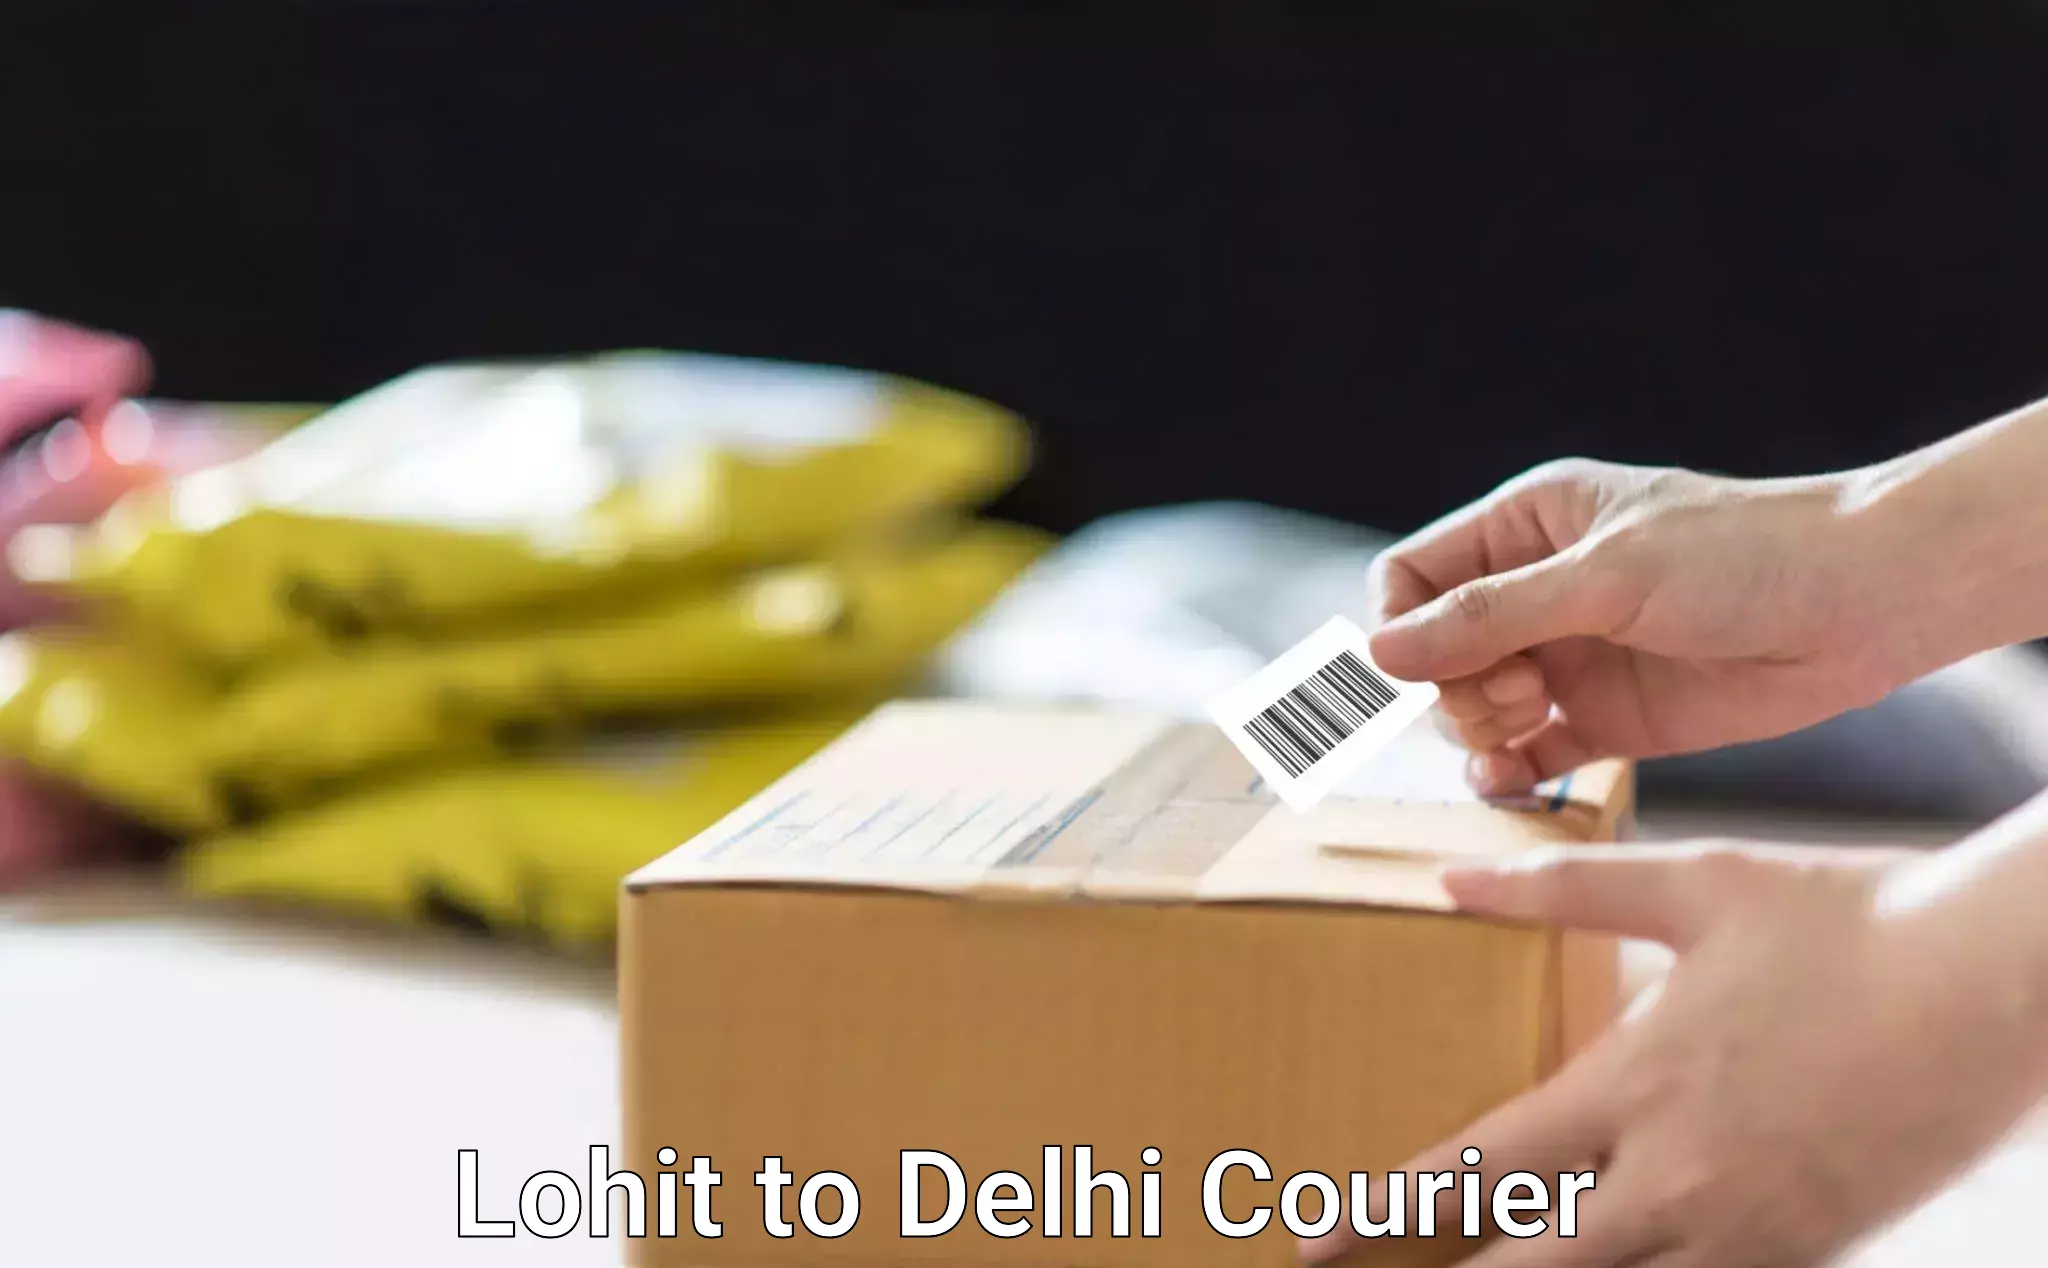 Efficient parcel delivery Lohit to East Delhi